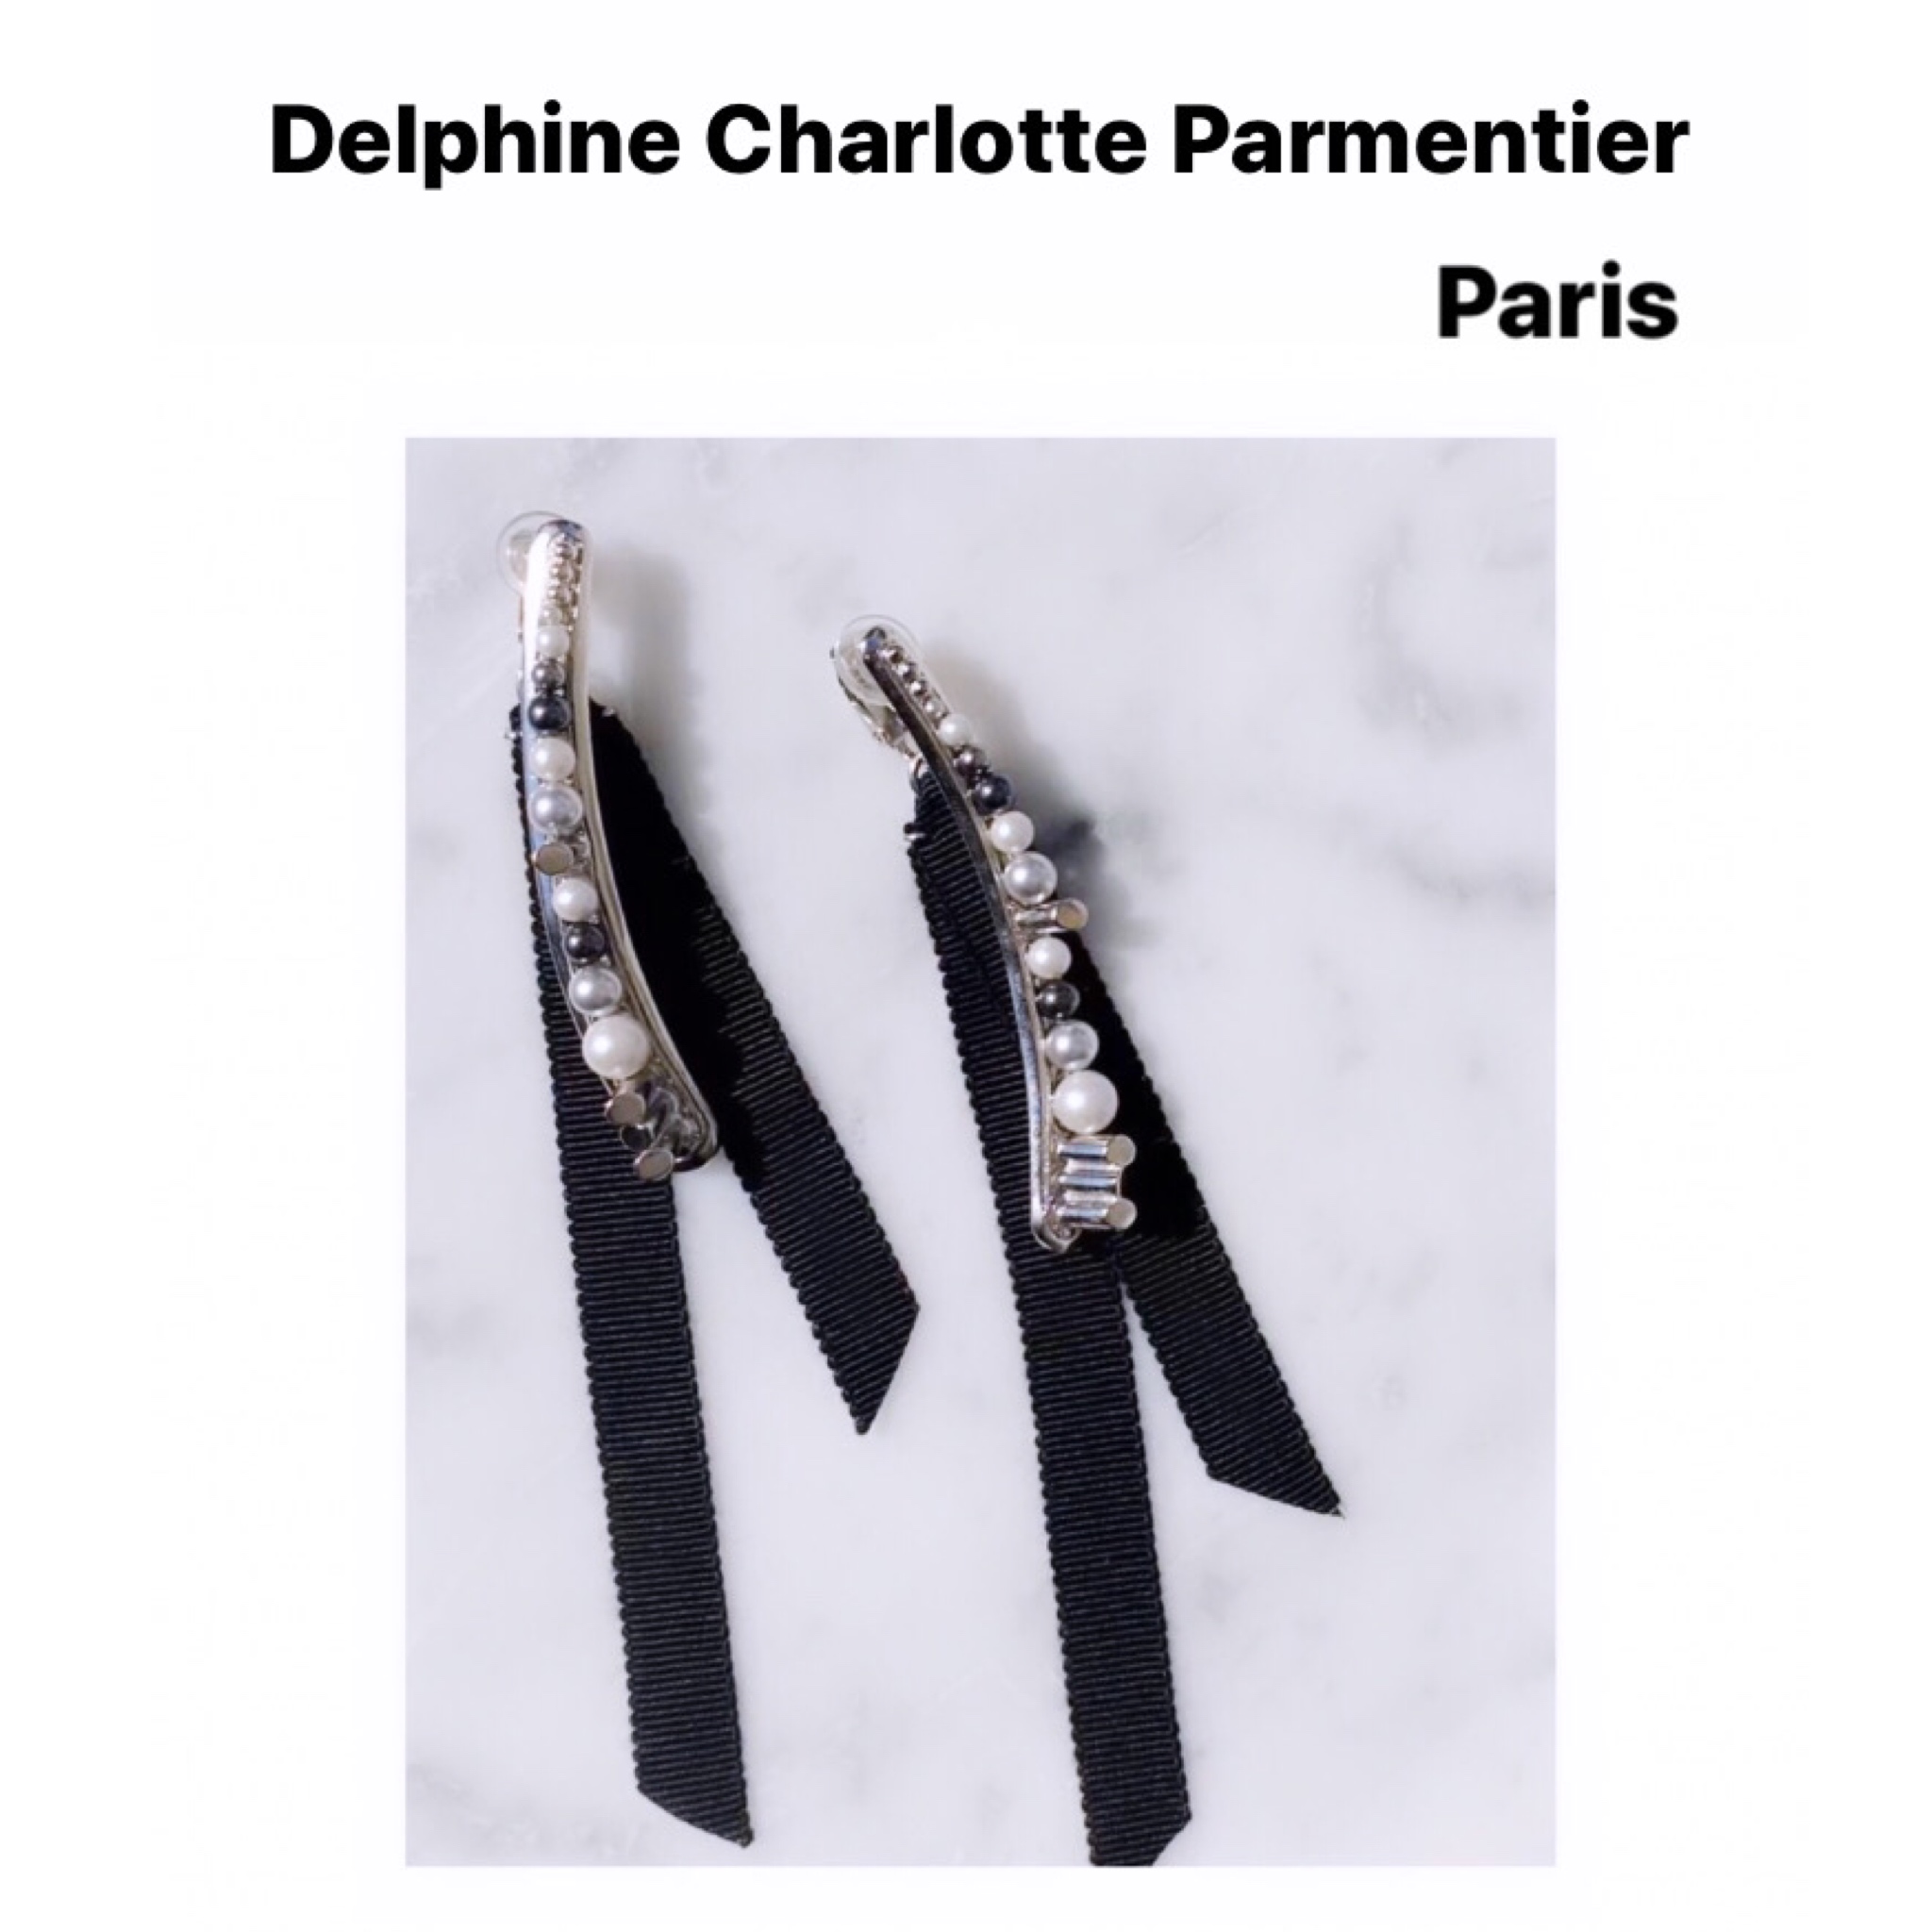 阪急うめだ本店　3F D.EDIT 『Maison Haussmann / Delphine Charlotte Parmentier 2DC / La Résidence / for-Y』拡大展開　株式会社サーキュレーション